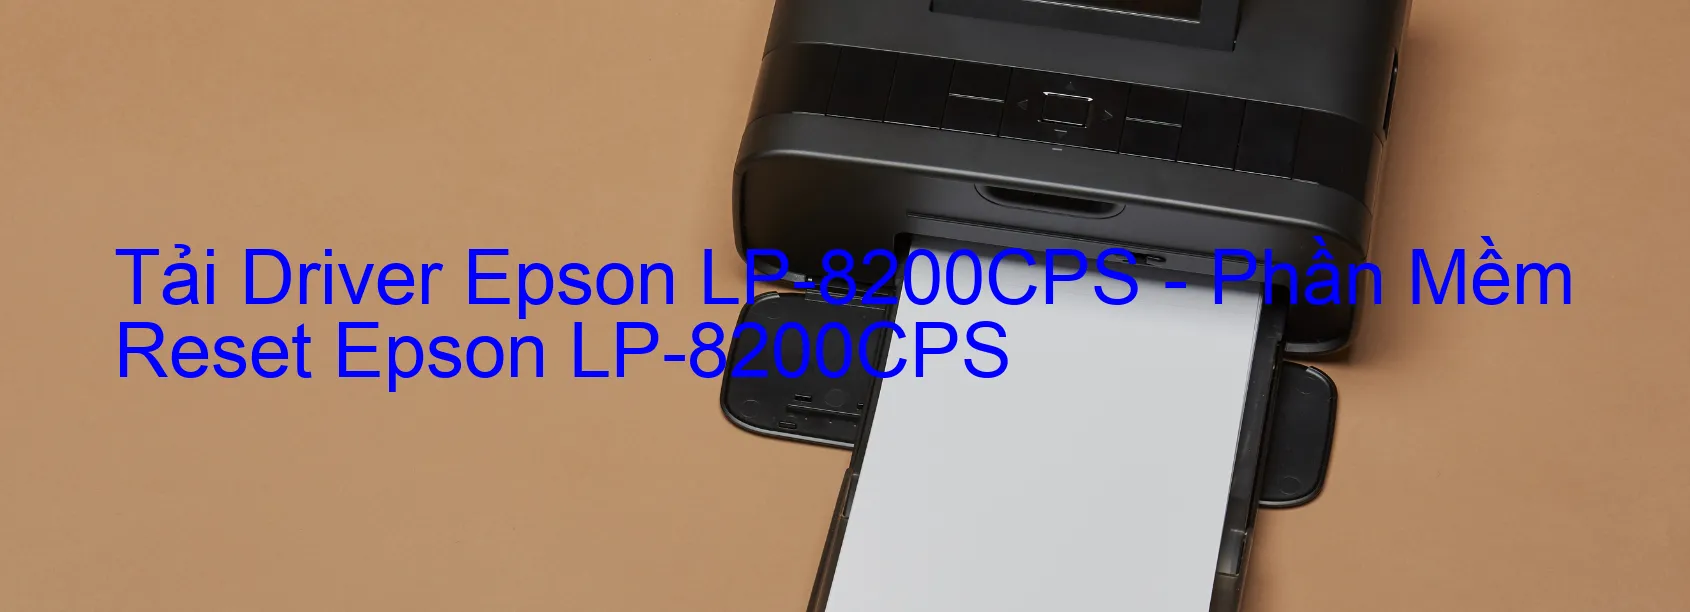 Driver Epson LP-8200CPS, Phần Mềm Reset Epson LP-8200CPS